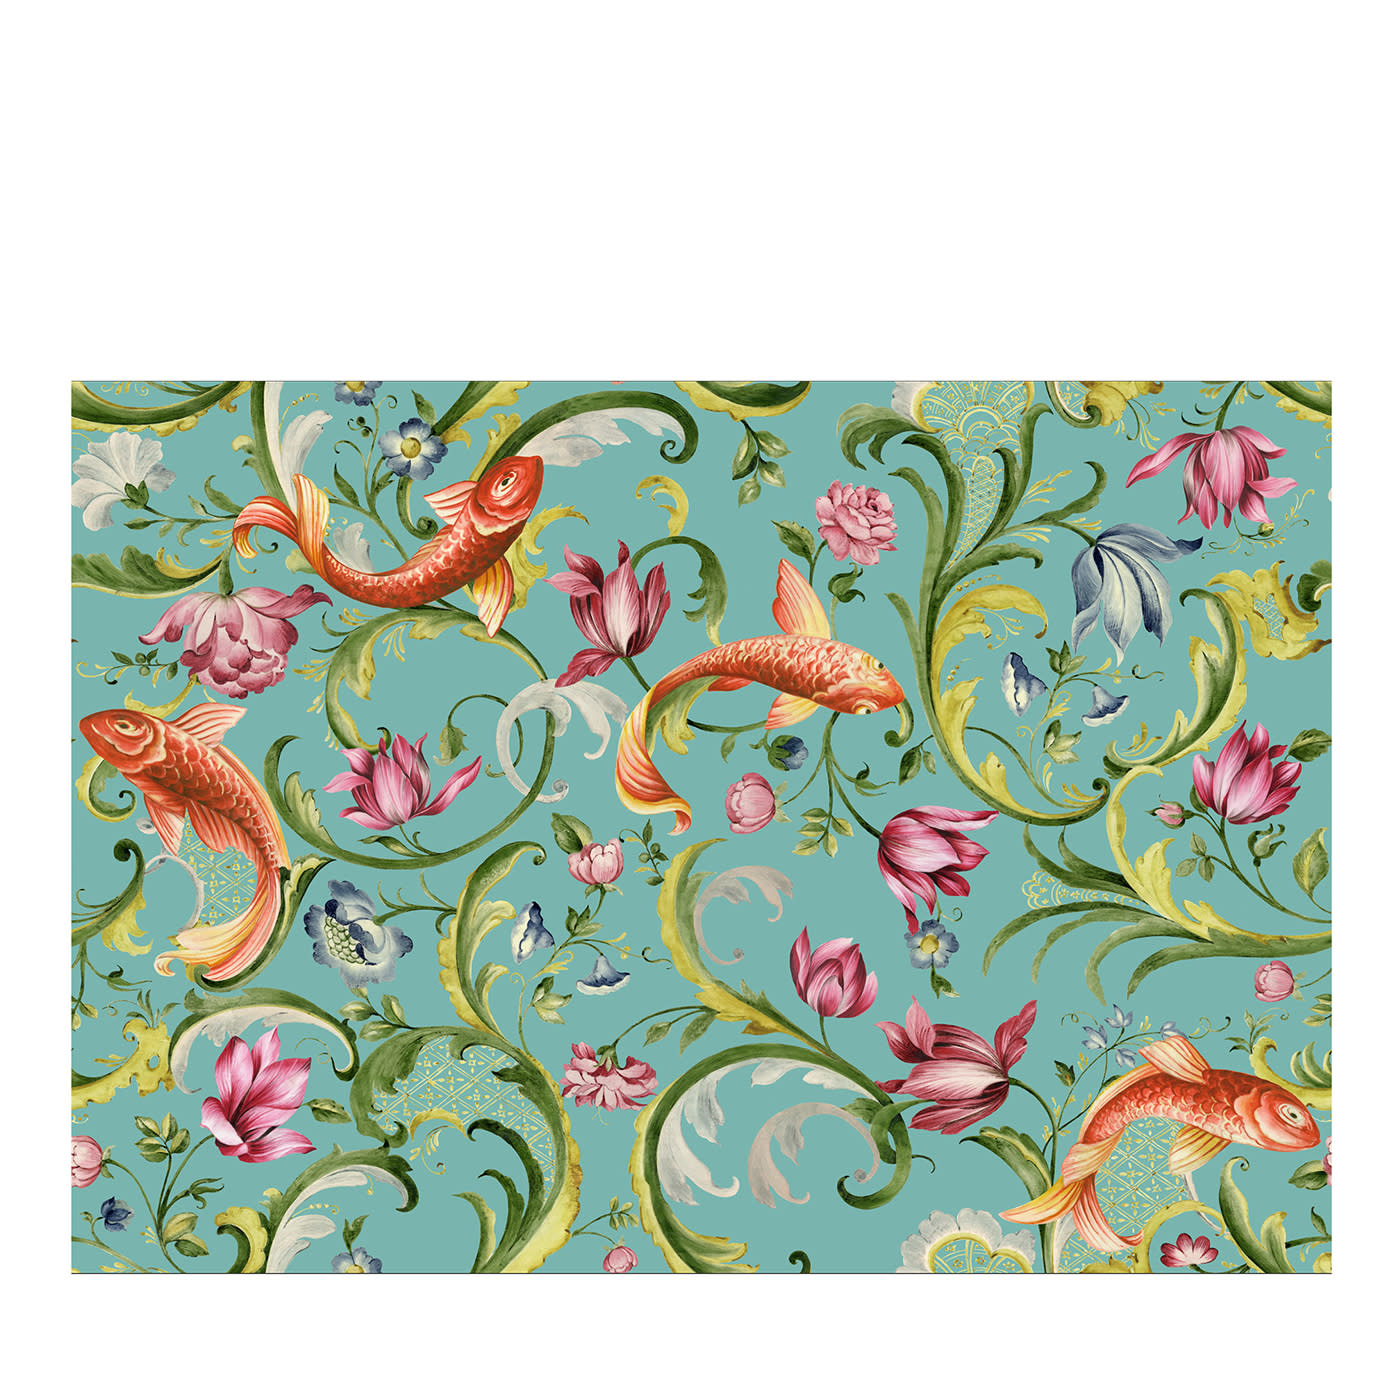 Italian Garden Turquoise Wallpaper - Officinarkitettura